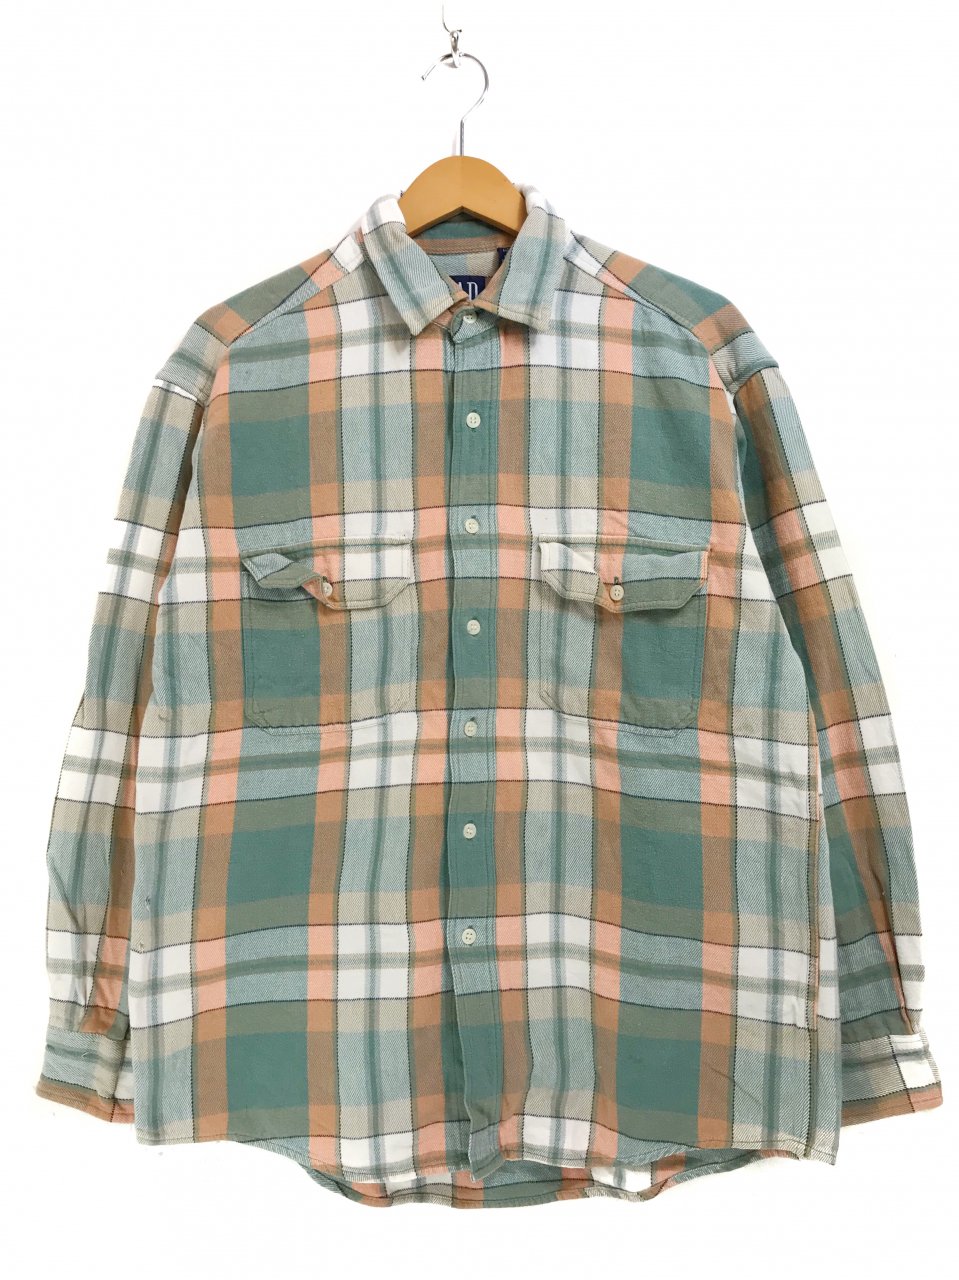 90s OLD GAP Check Flannel L/S Shirt 緑オレンジ M オールドギャップ